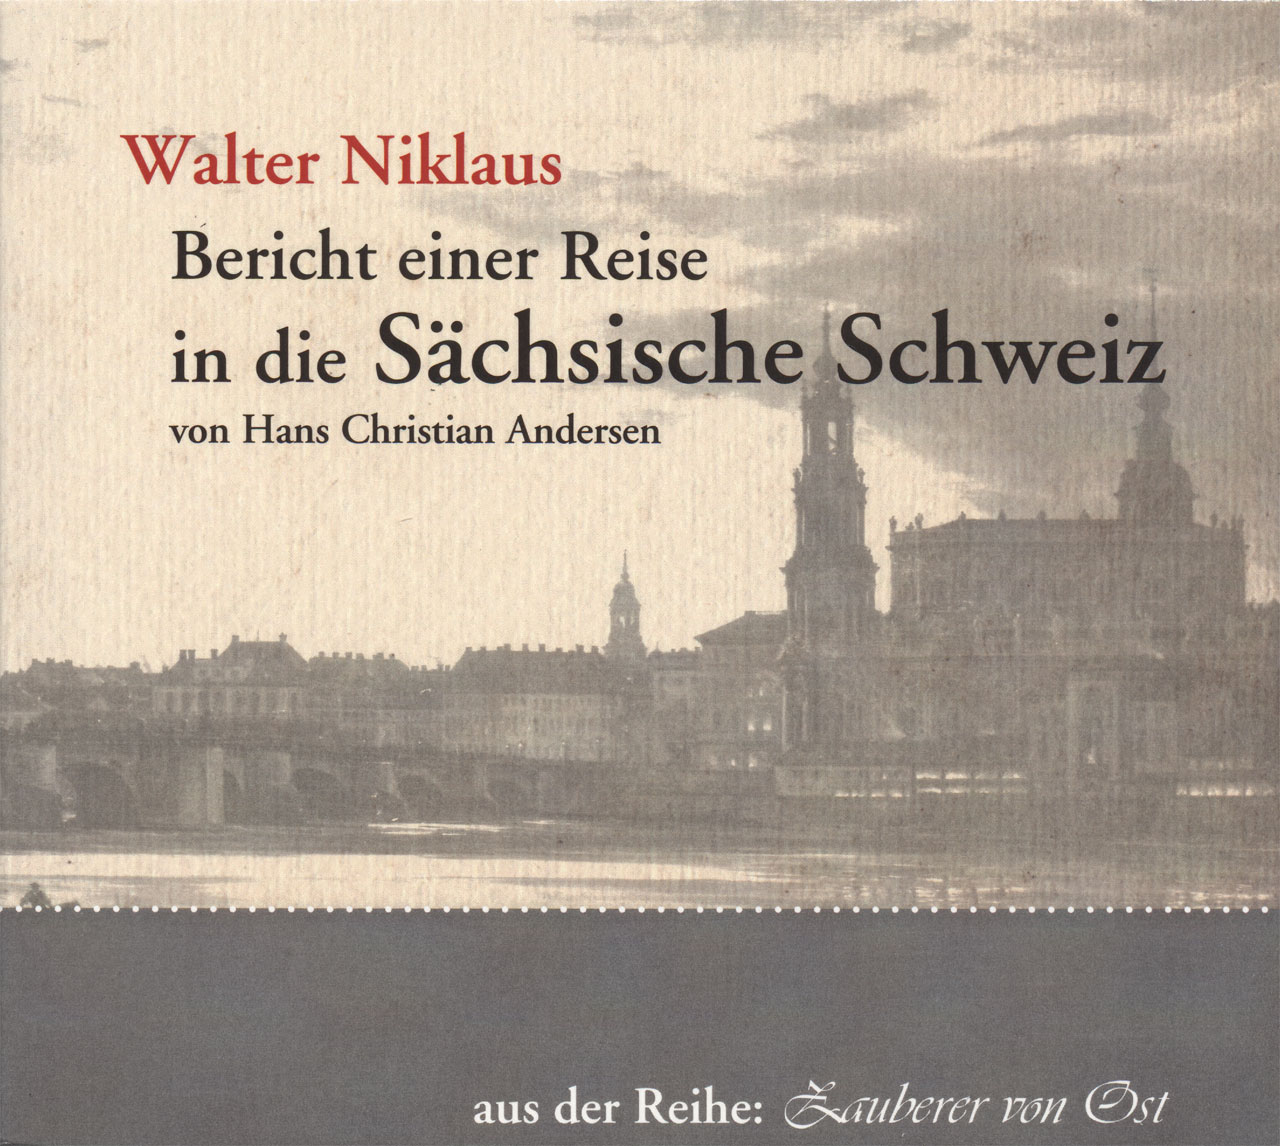 Bericht einer Reise in die Sächsische Schweiz
Walter Niklaus